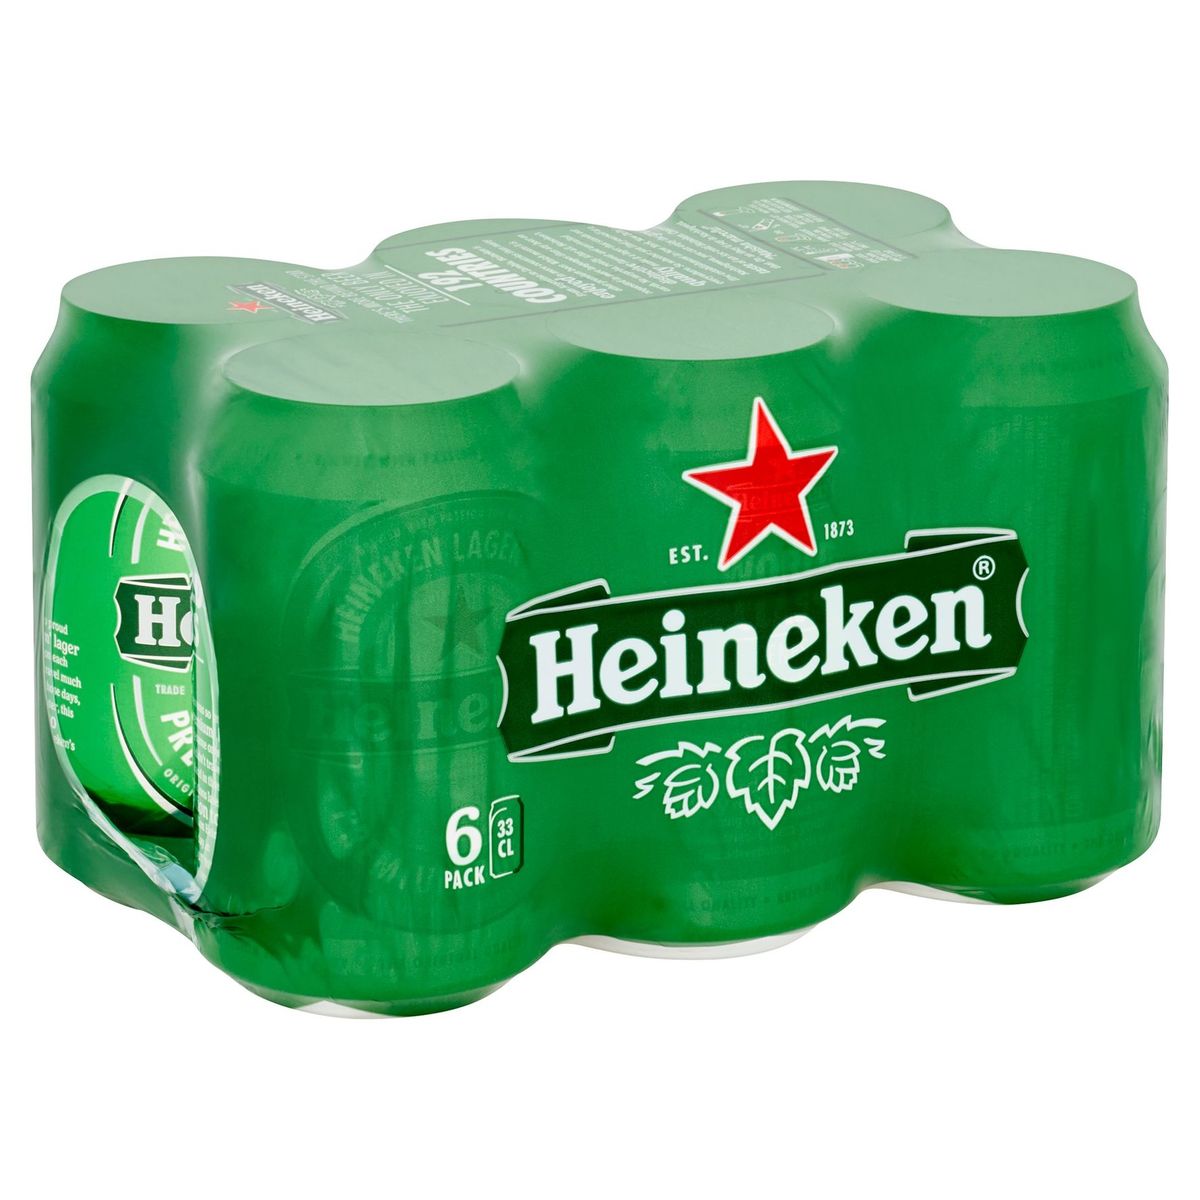 Heineken Blond bier Pils 5% ALC 6 x 33 cl Blik